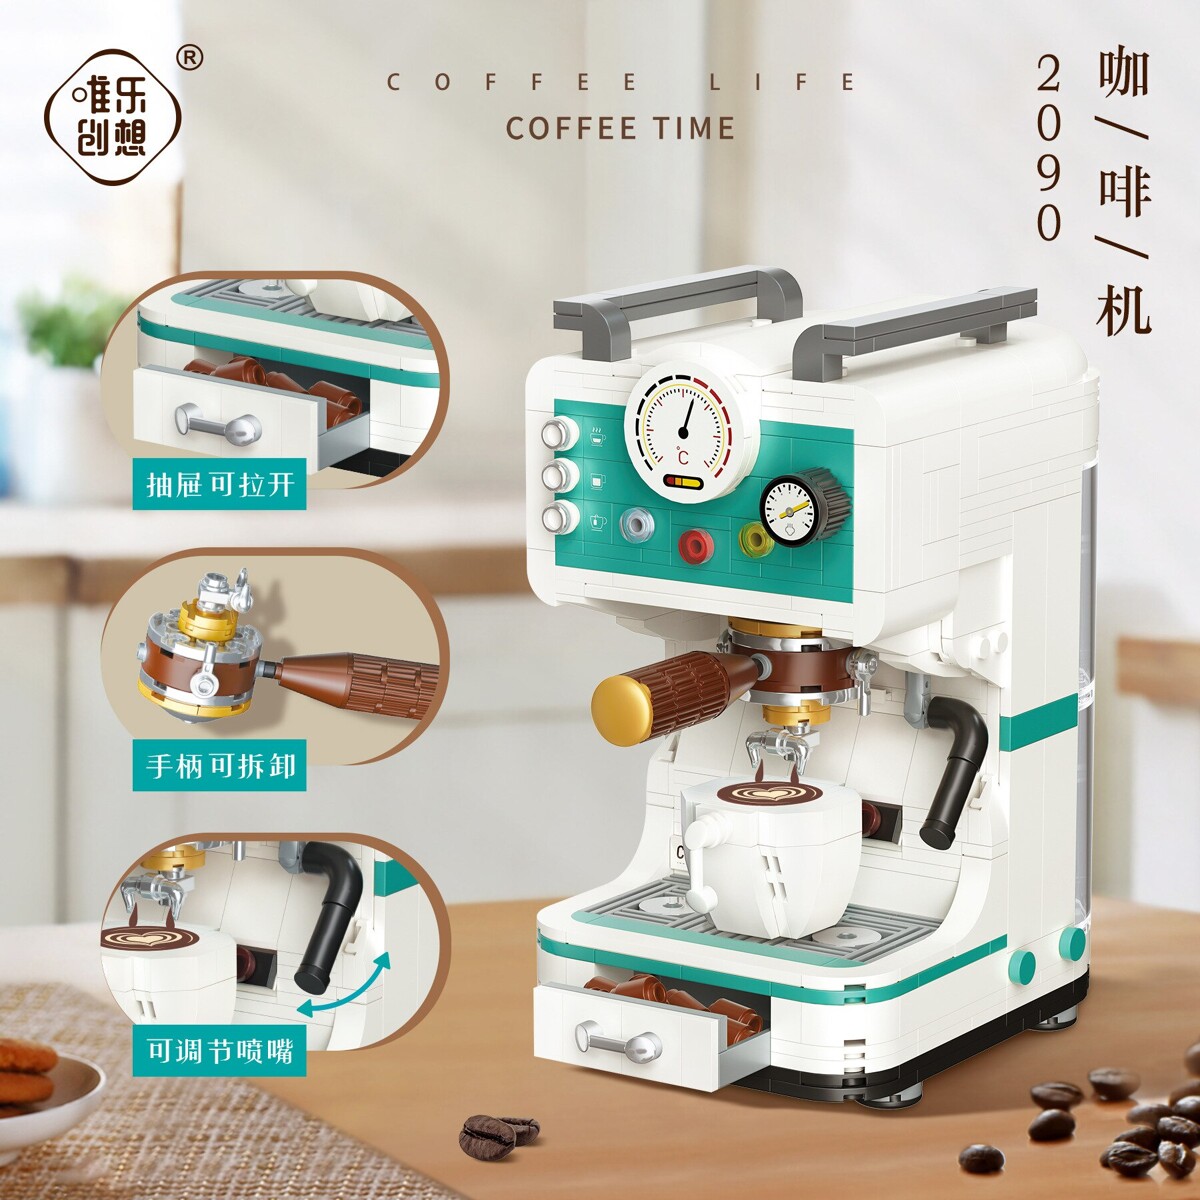 WL 2090 Coffee Machine